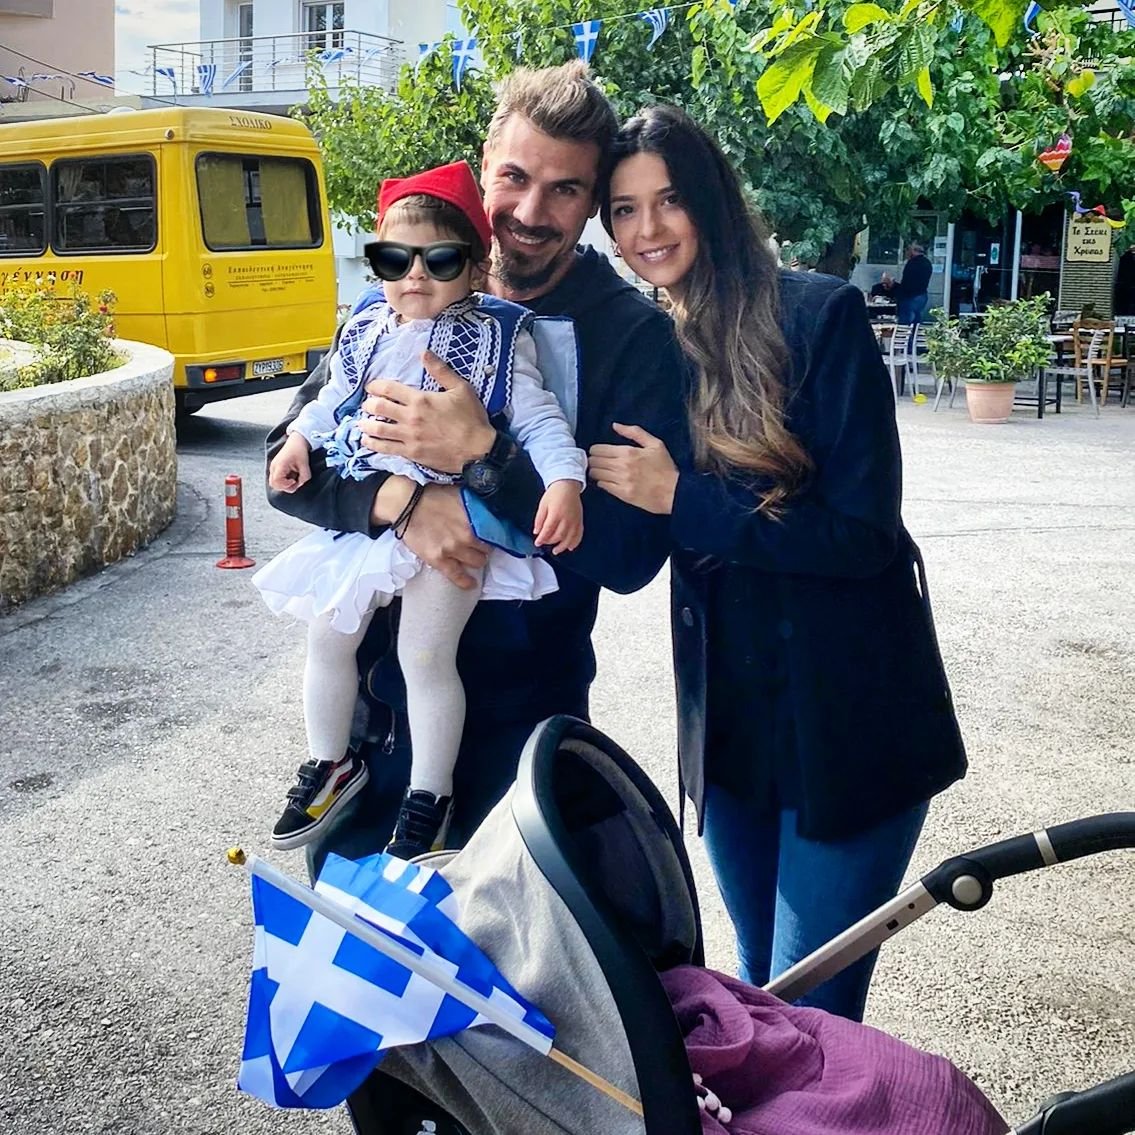 Άκης Πετρετζίκης: Ο γιος του τον επισκέφθηκε στη δουλειά! Το γλυκό στιγμιότυπο που μοιράστηκε στο Instagram